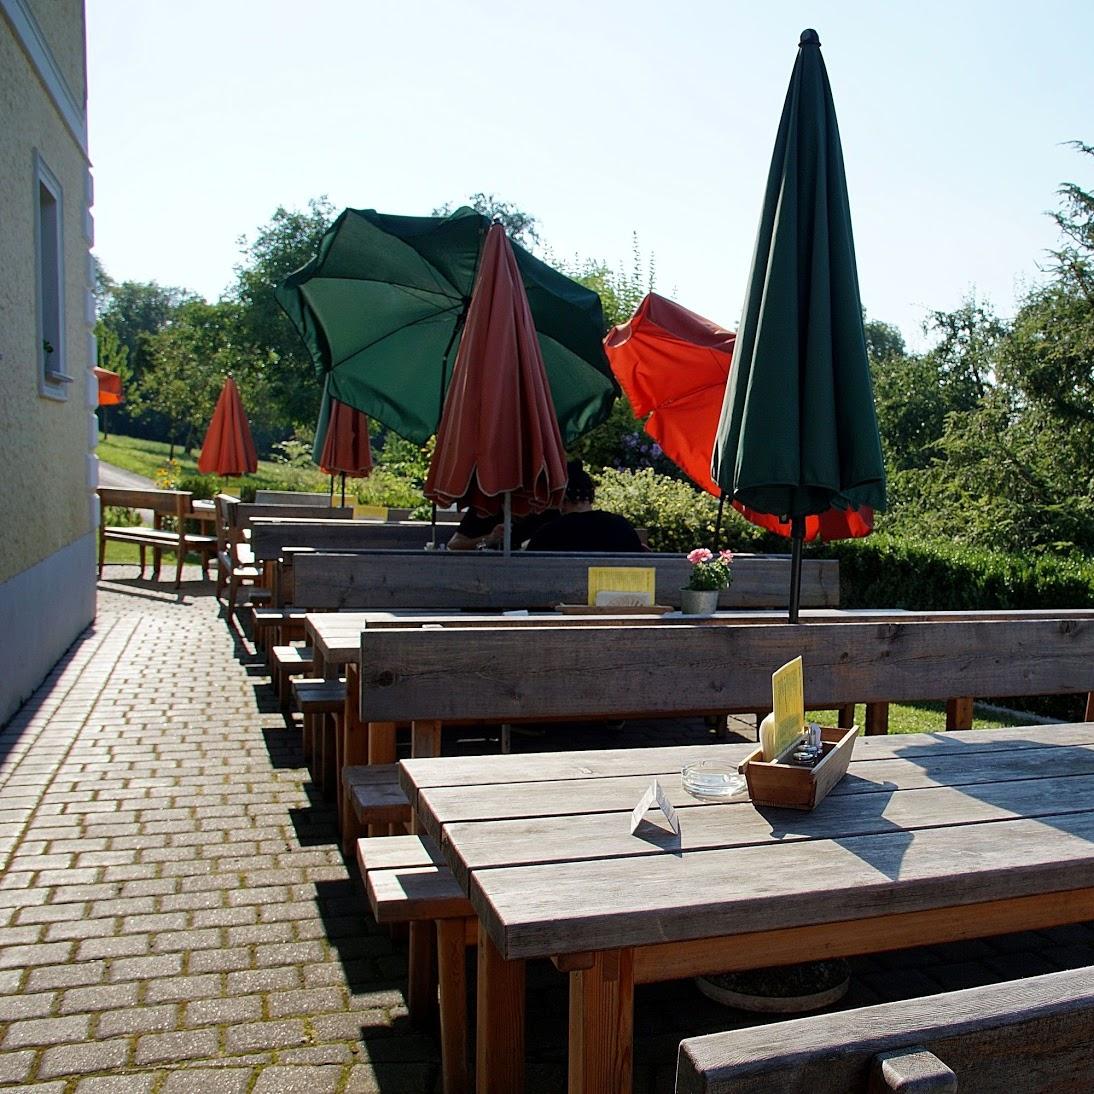 Restaurant "Mostschank Greinecker" in Bad Schallerbach